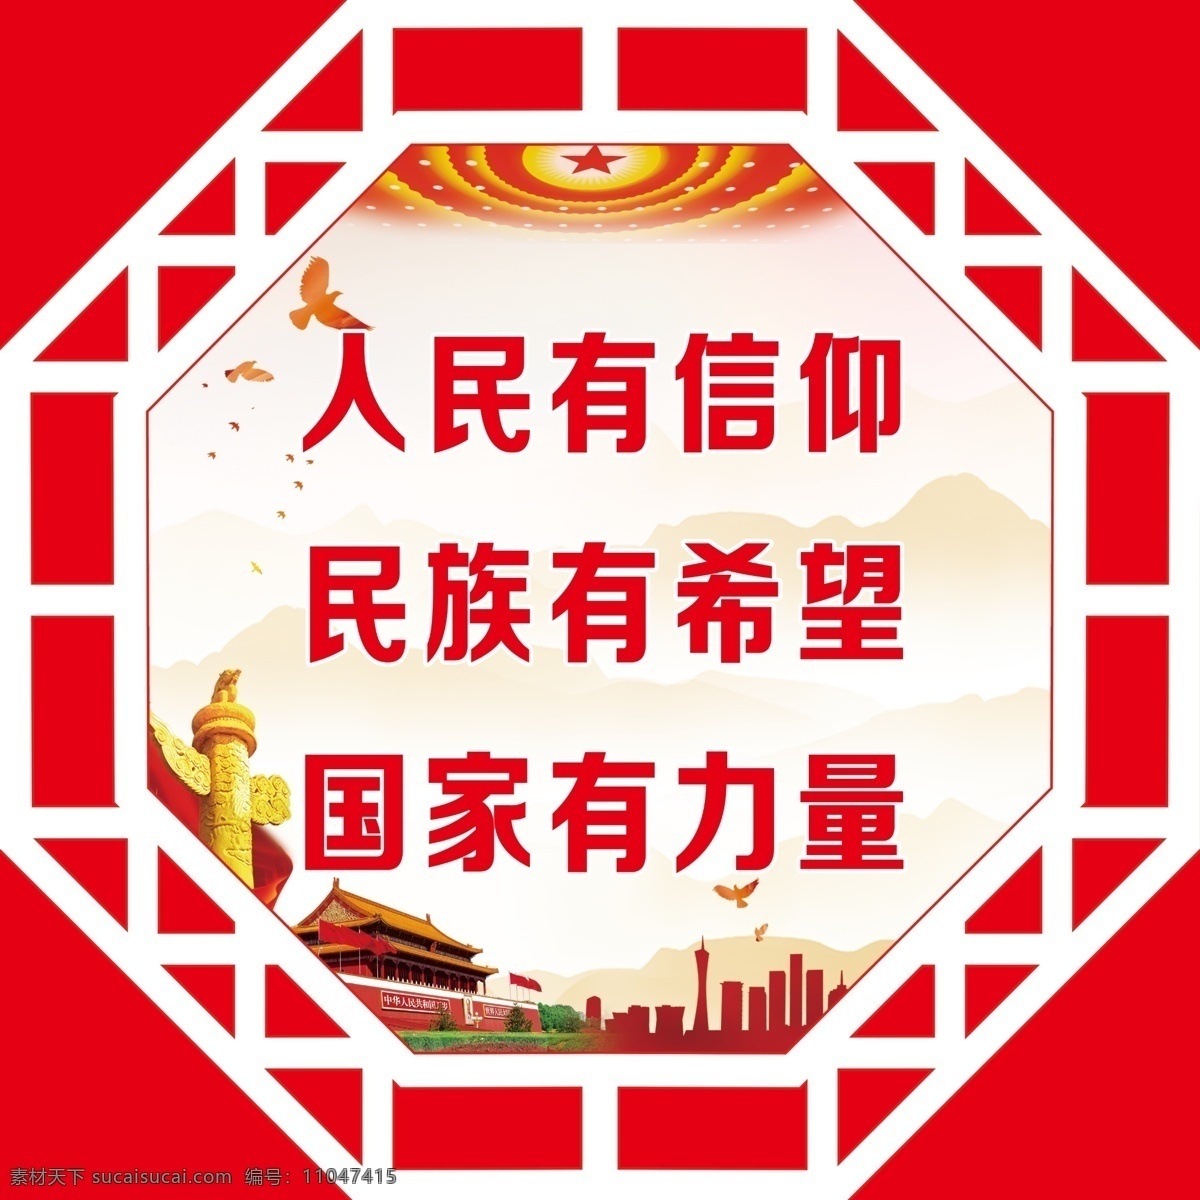 社会主义 核心 观 核心价值观 学校版面 人民有信仰 学校 校园文化 北大 huang 校园 室外广告设计